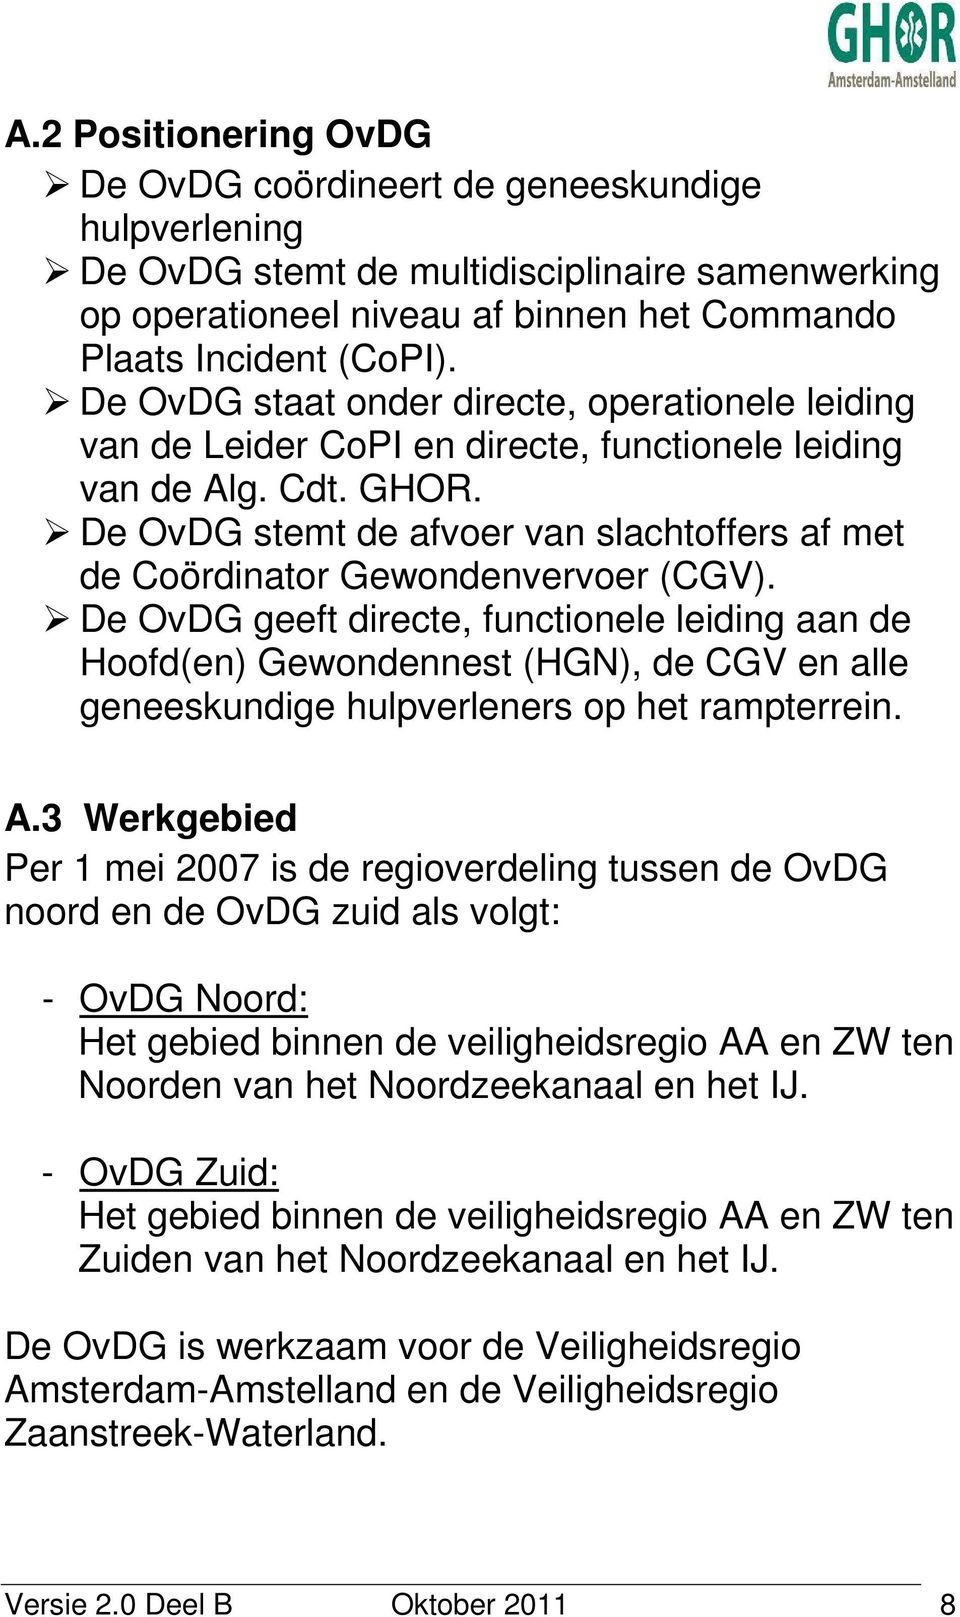 De OvDG stemt de afvoer van slachtoffers af met de Coördinator Gewondenvervoer (CGV).